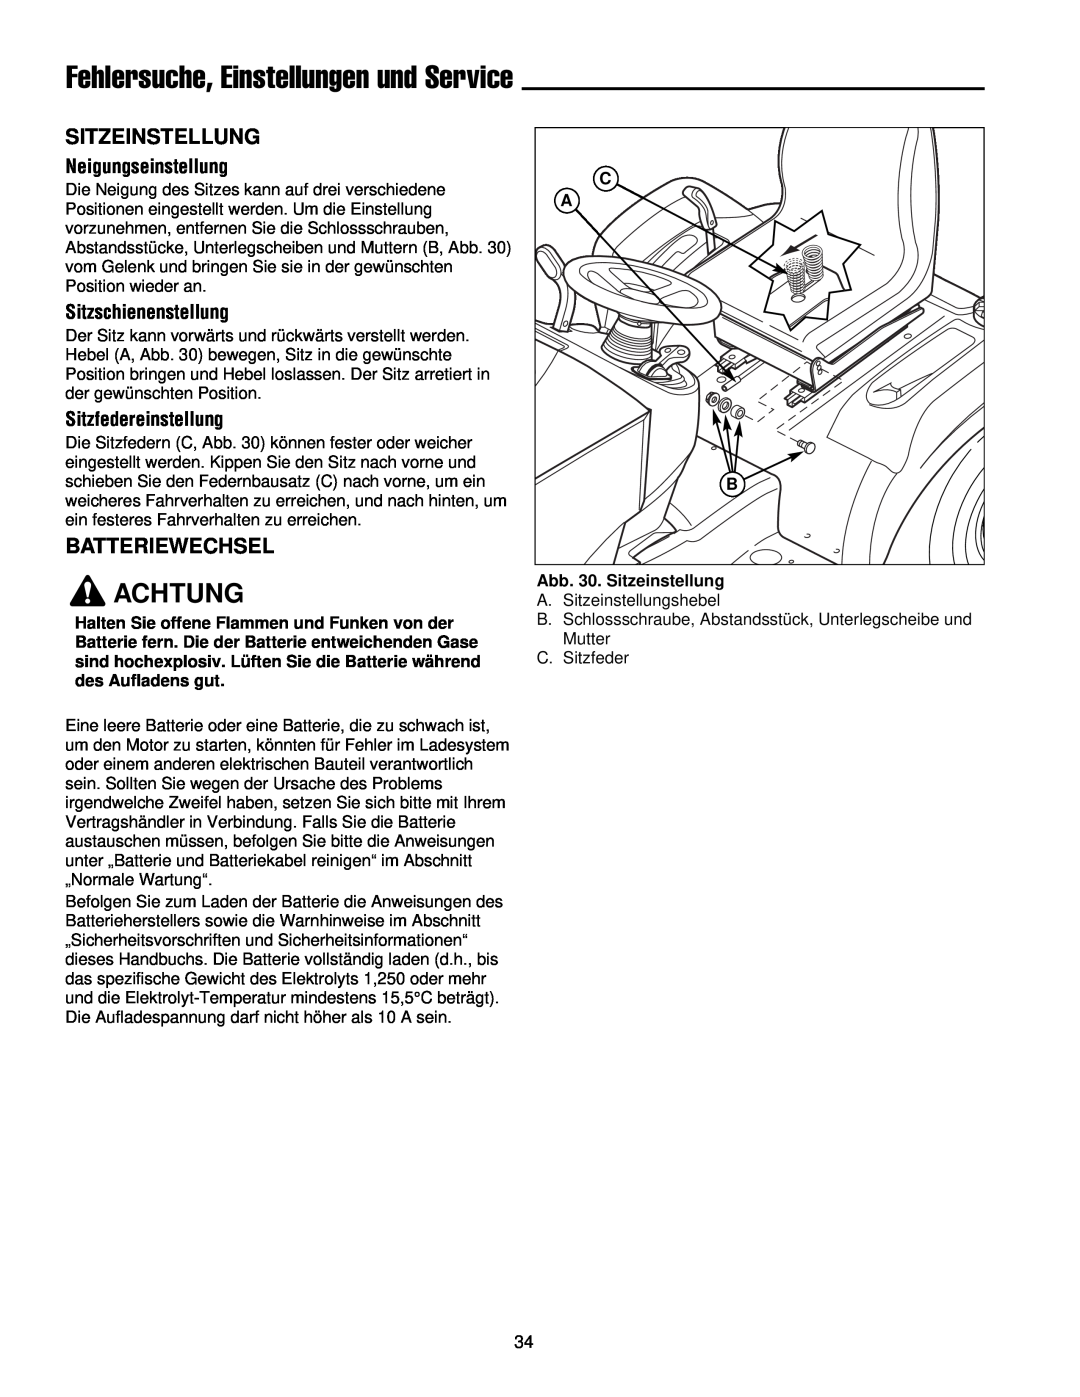 Simplicity 300 manual Fehlersuche, Einstellungen und Service, Batteriewechsel, Achtung, Abb. 30. Sitzeinstellung 